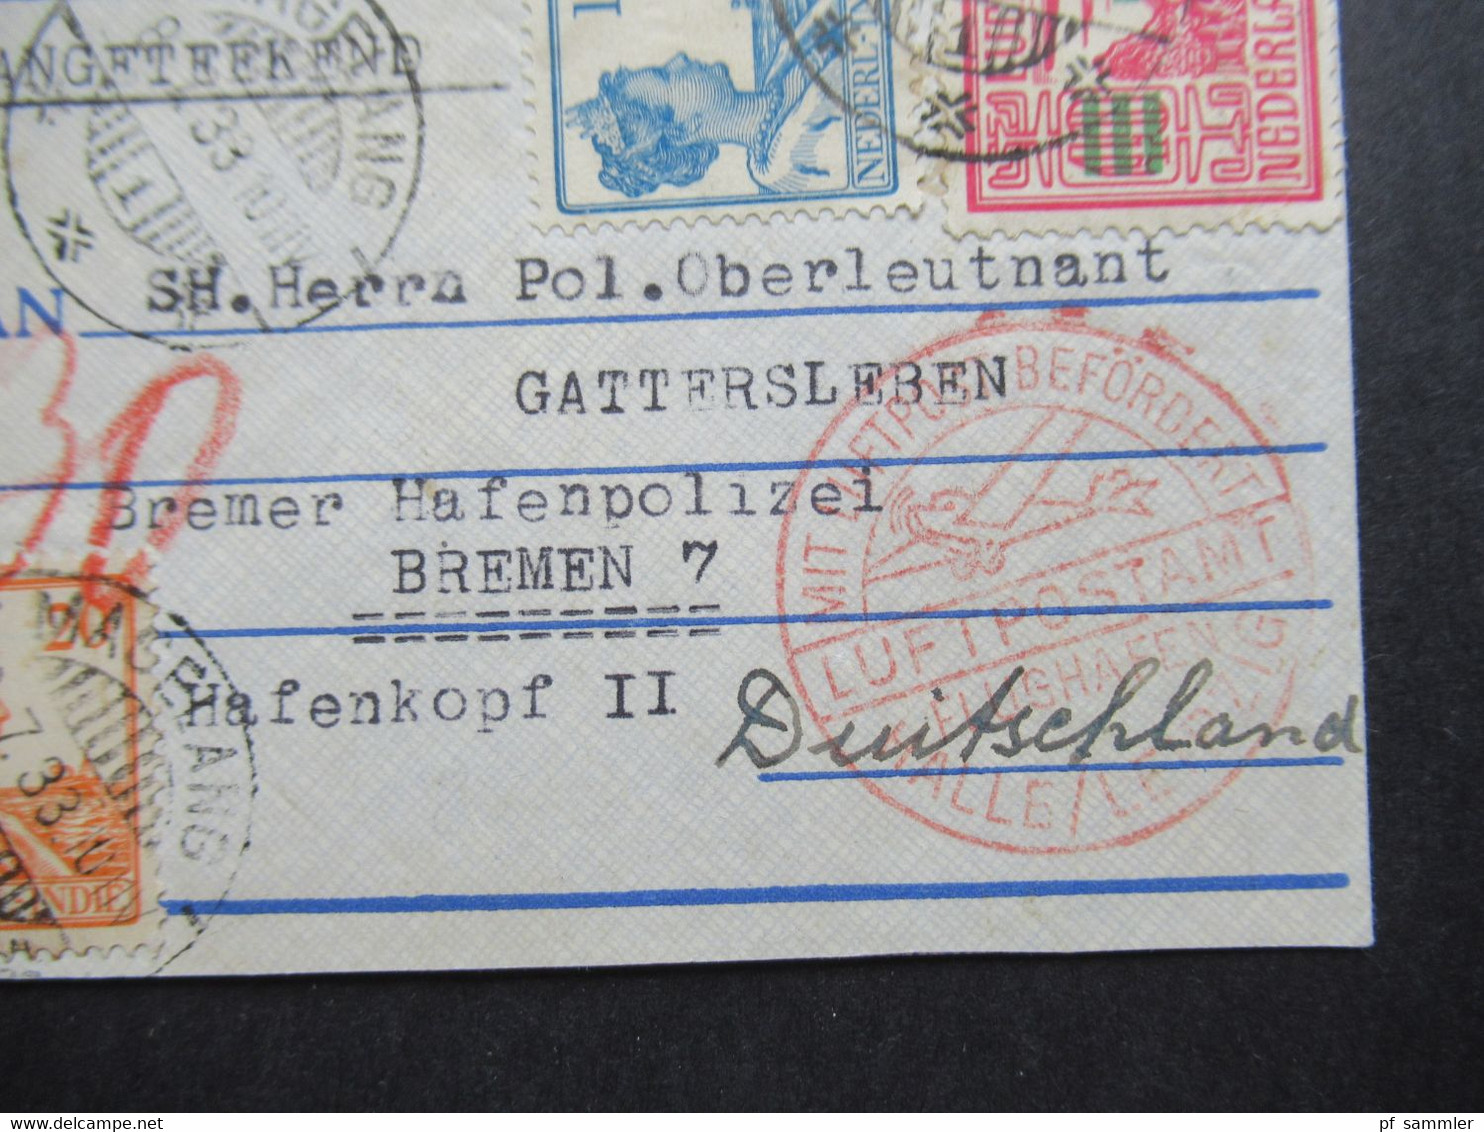 Air Mail Einschreiben Magelang Nach Bremen An Polizei Oberleutnant Gattersleben Bremer Hafenpolizei Hafenkopf II - Netherlands Indies